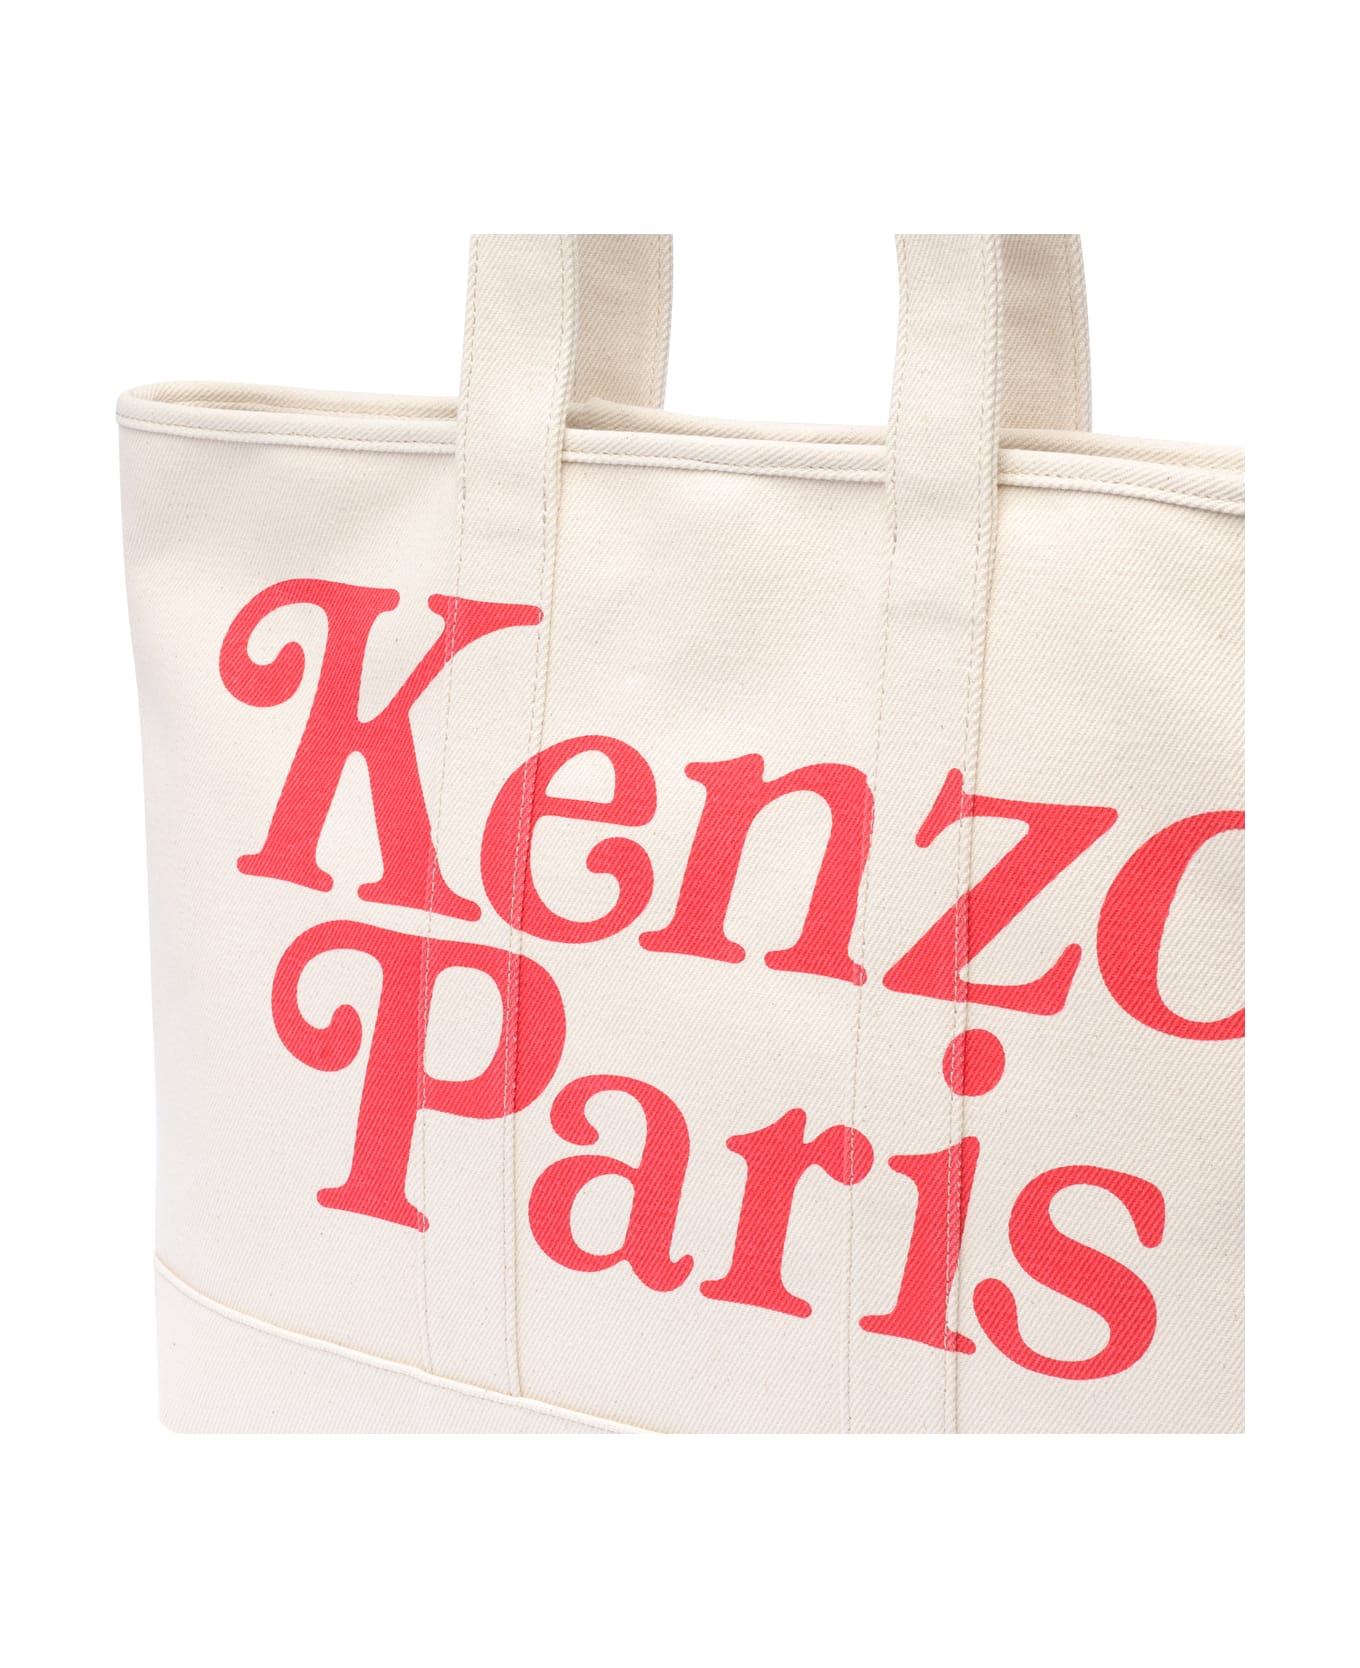 Kenzo Paris Tote Bag - Beige